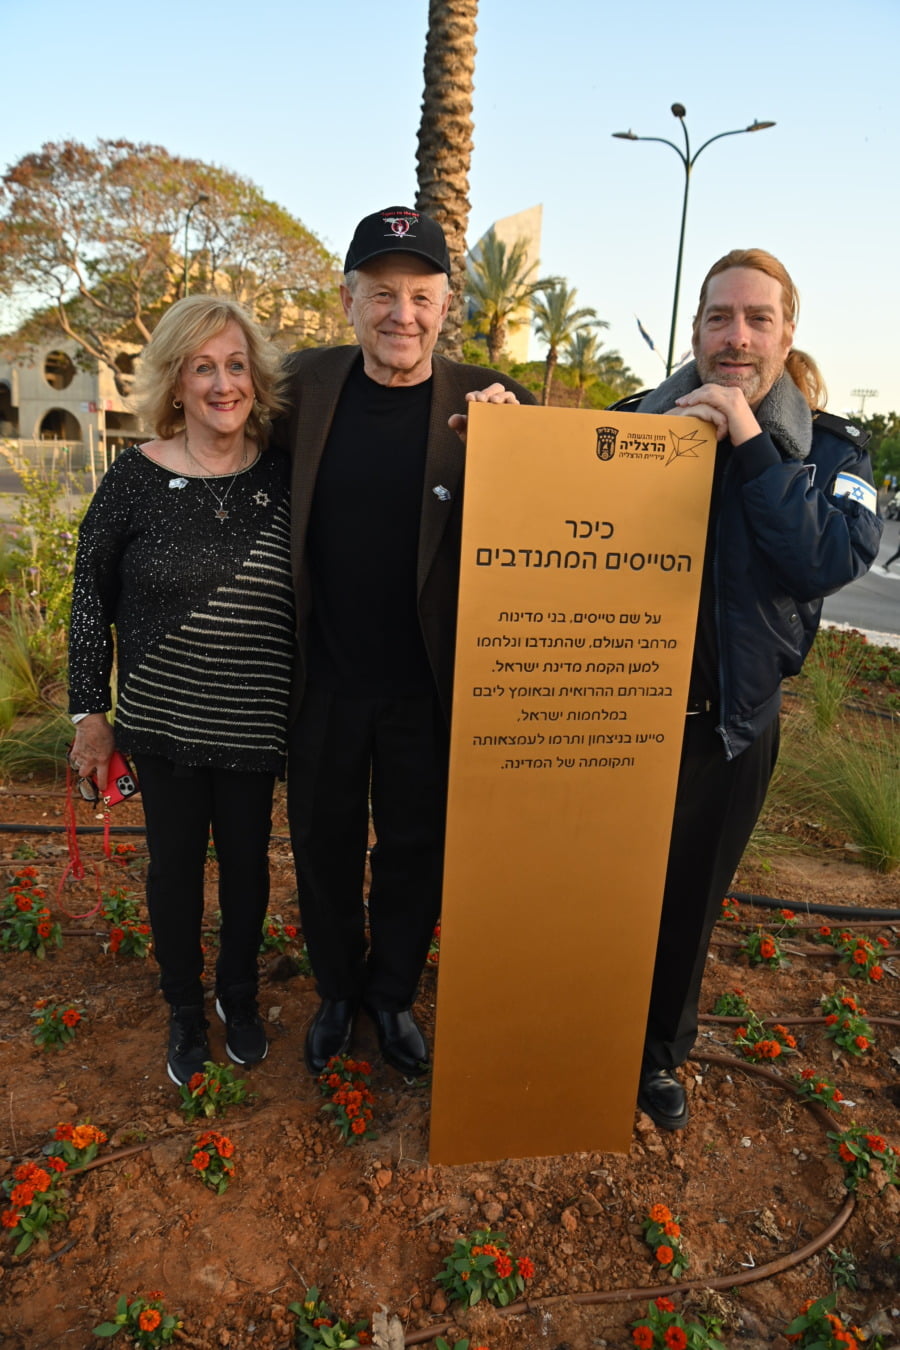 La place dédiée aux pilotes volontaires et à la survie d’Israël, le 27 avril 2023, de gauche à droite : Nurit Greenger, cousine d’Ed Kugler Mitch, et Mike Flint - Photo Nurit Greenger